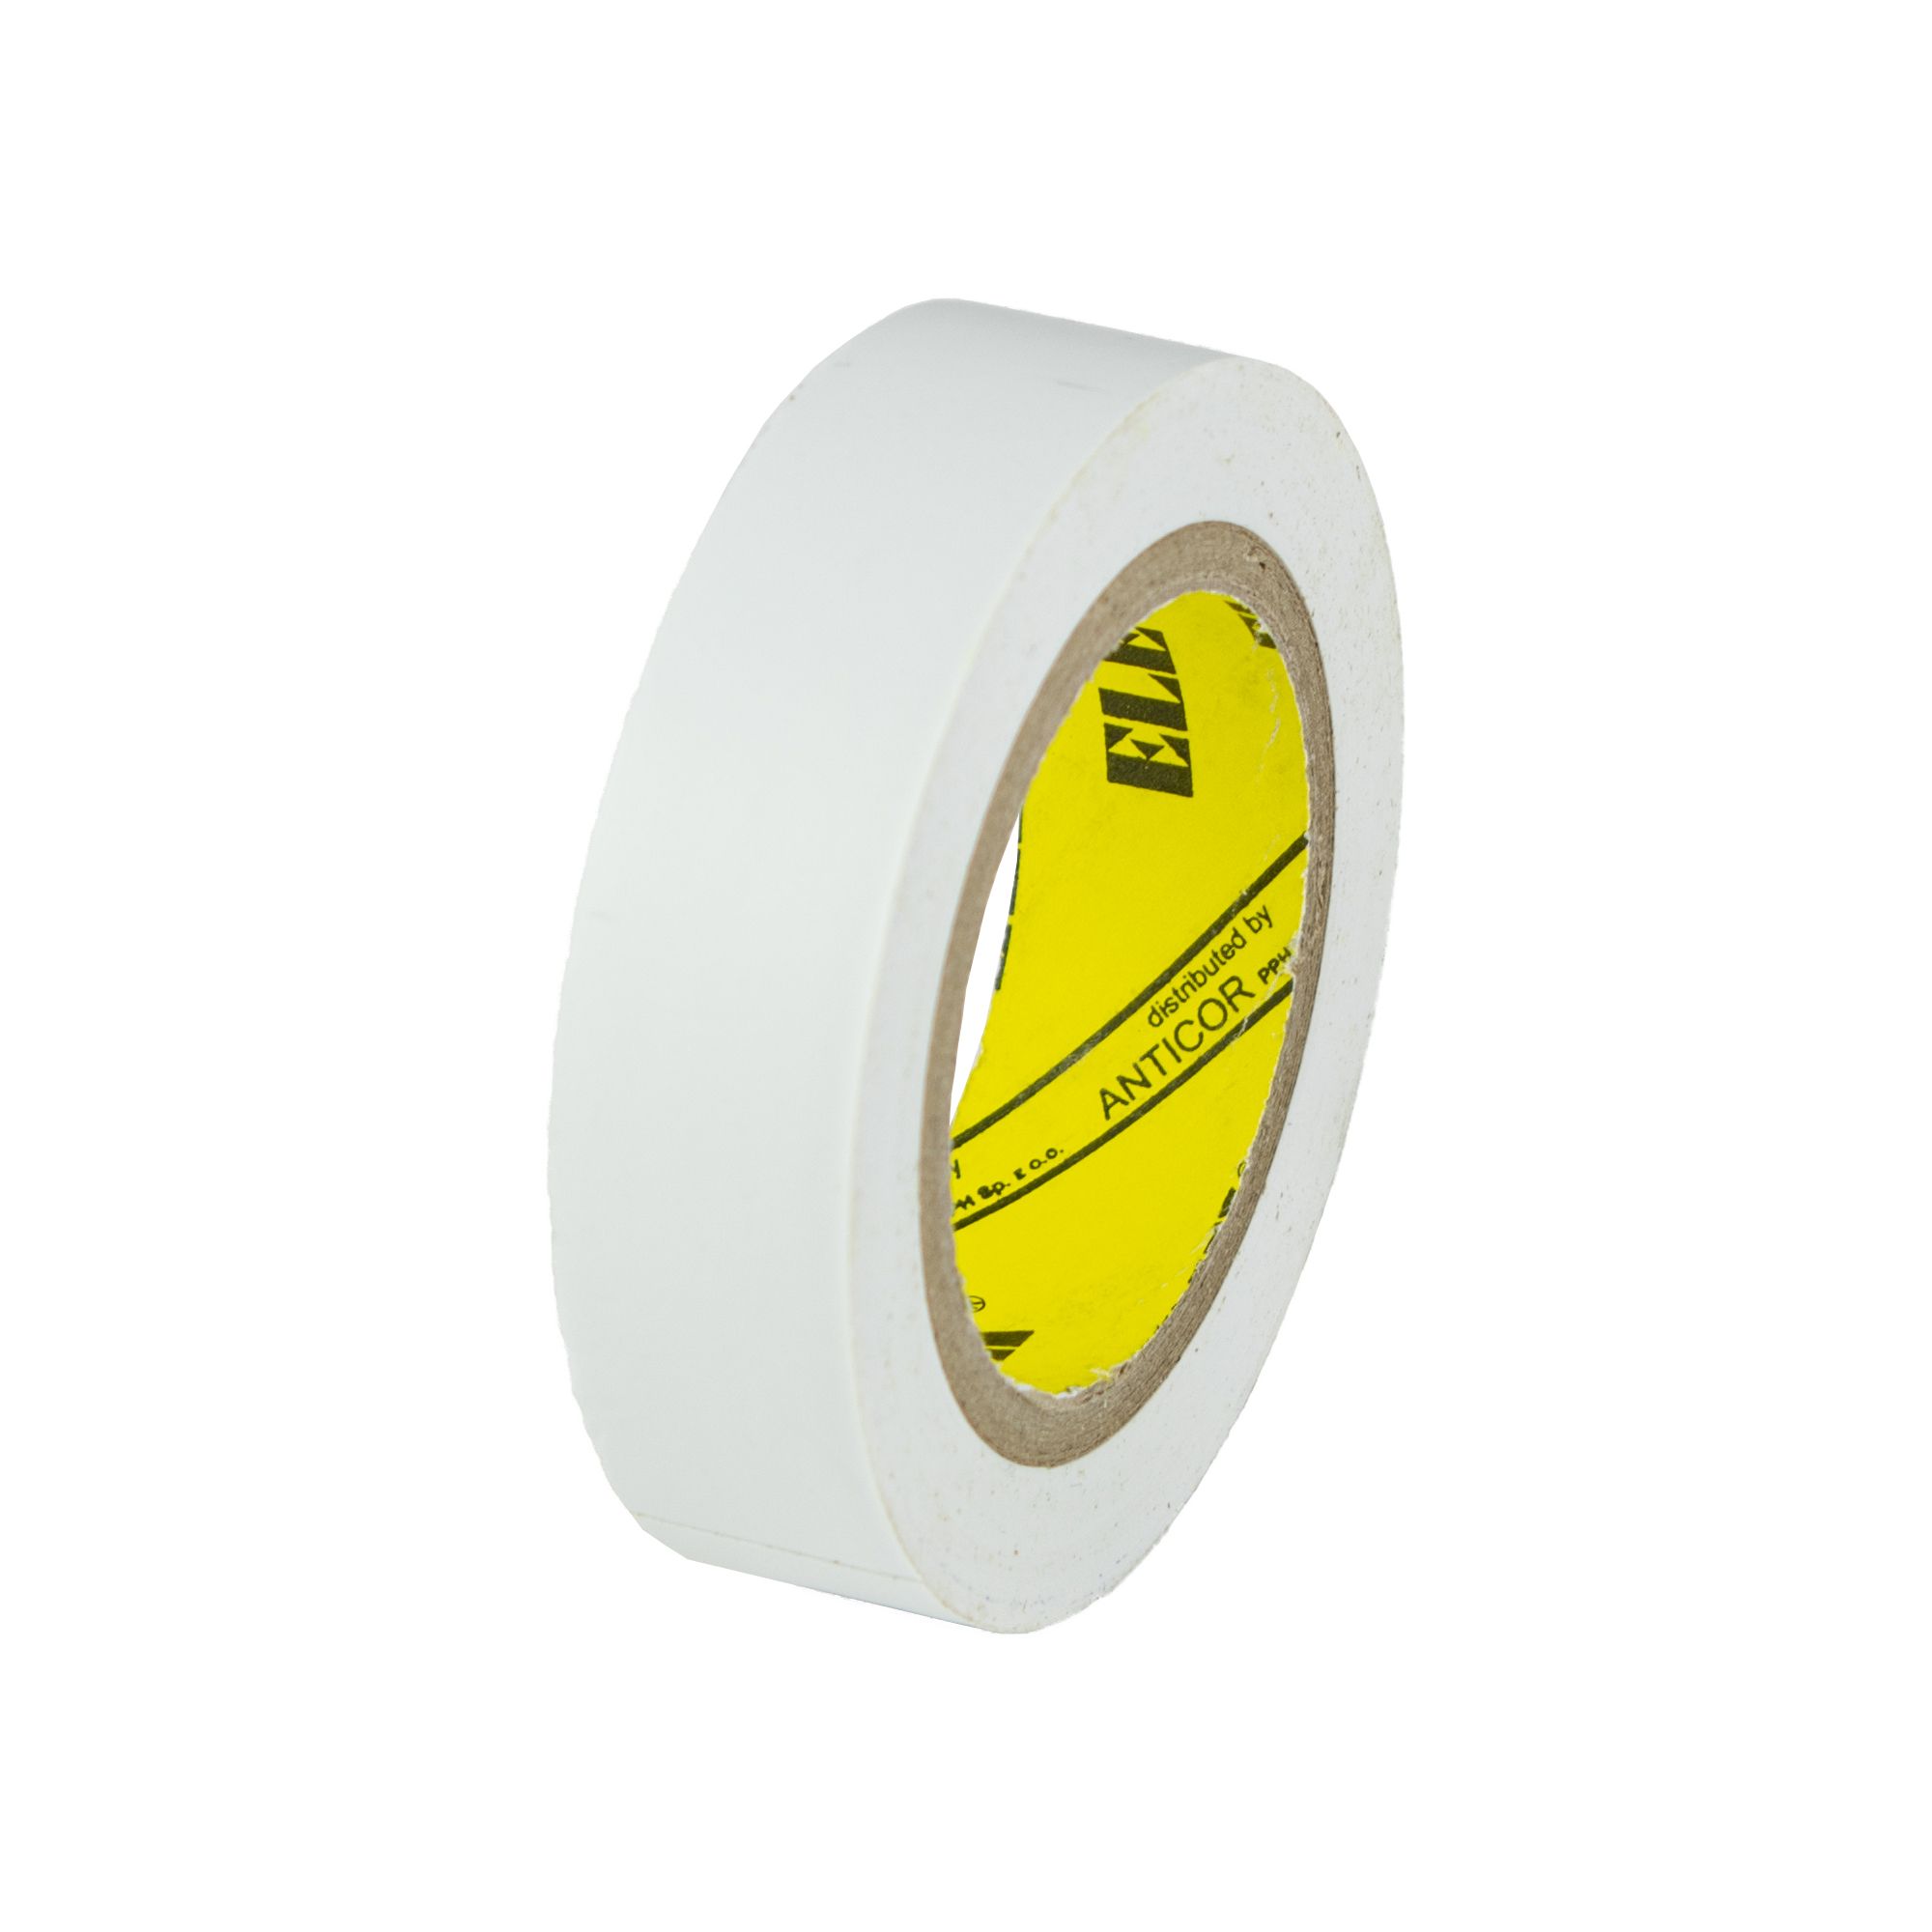 Izolační páska PVC 15mm / 10m, bílá 0.028000 Kg GIGA Sklad20 V9511 28